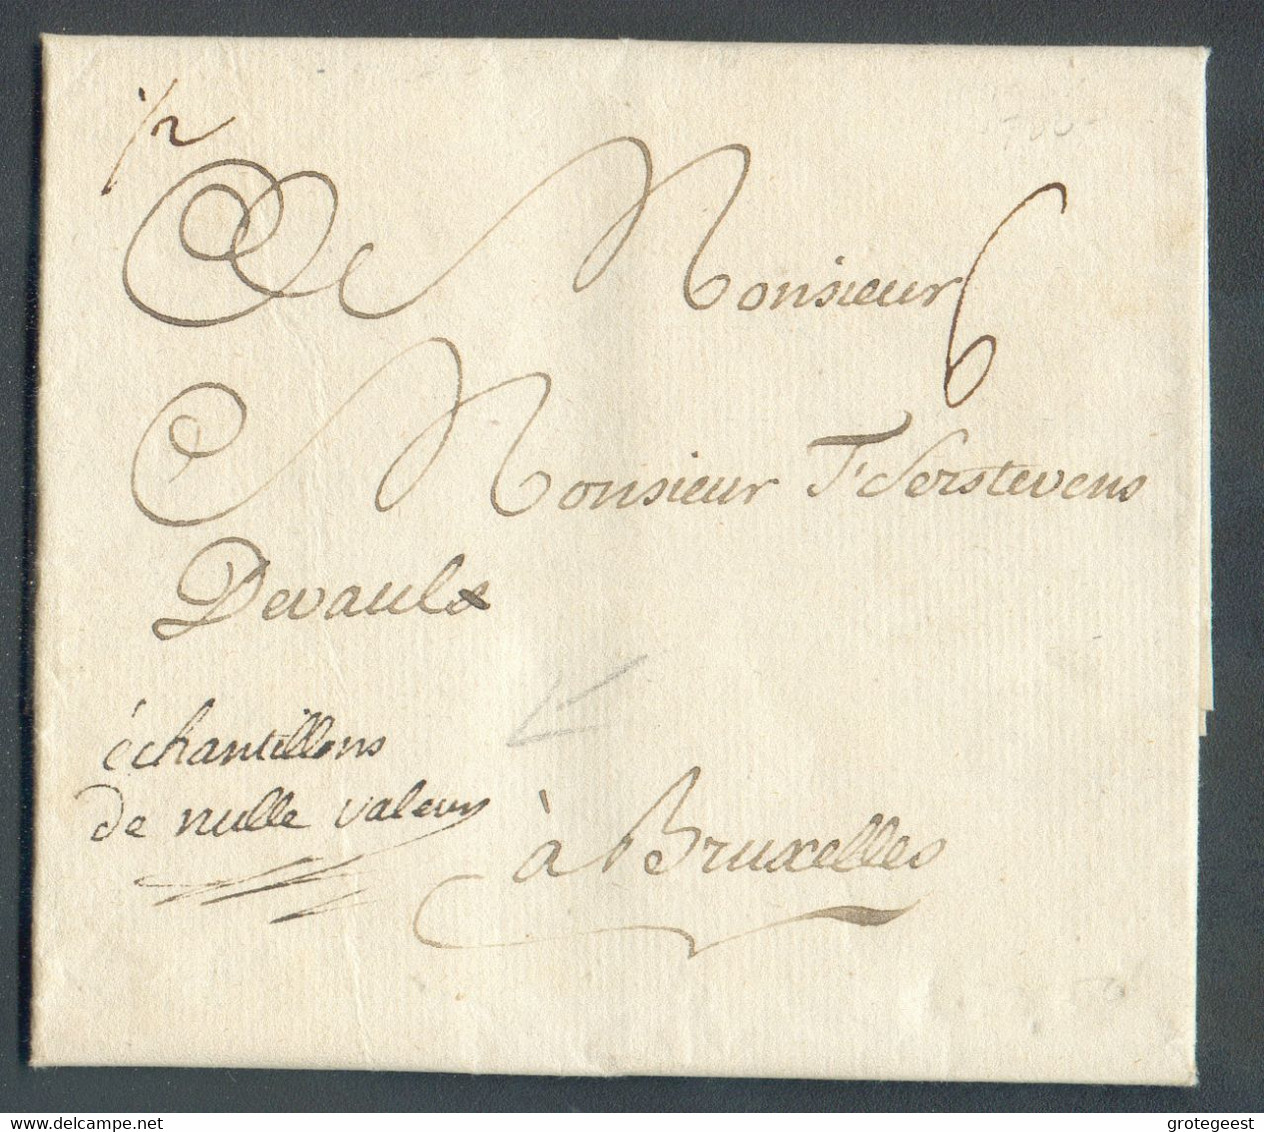 LAC De DOLHAIN Le 11 Mars 1780 + Manuscrit '½' Et 'échantillons De Nulle Valeur' Vers Bruxelles Port '6'. - 16441 - 1714-1794 (Paises Bajos Austriacos)